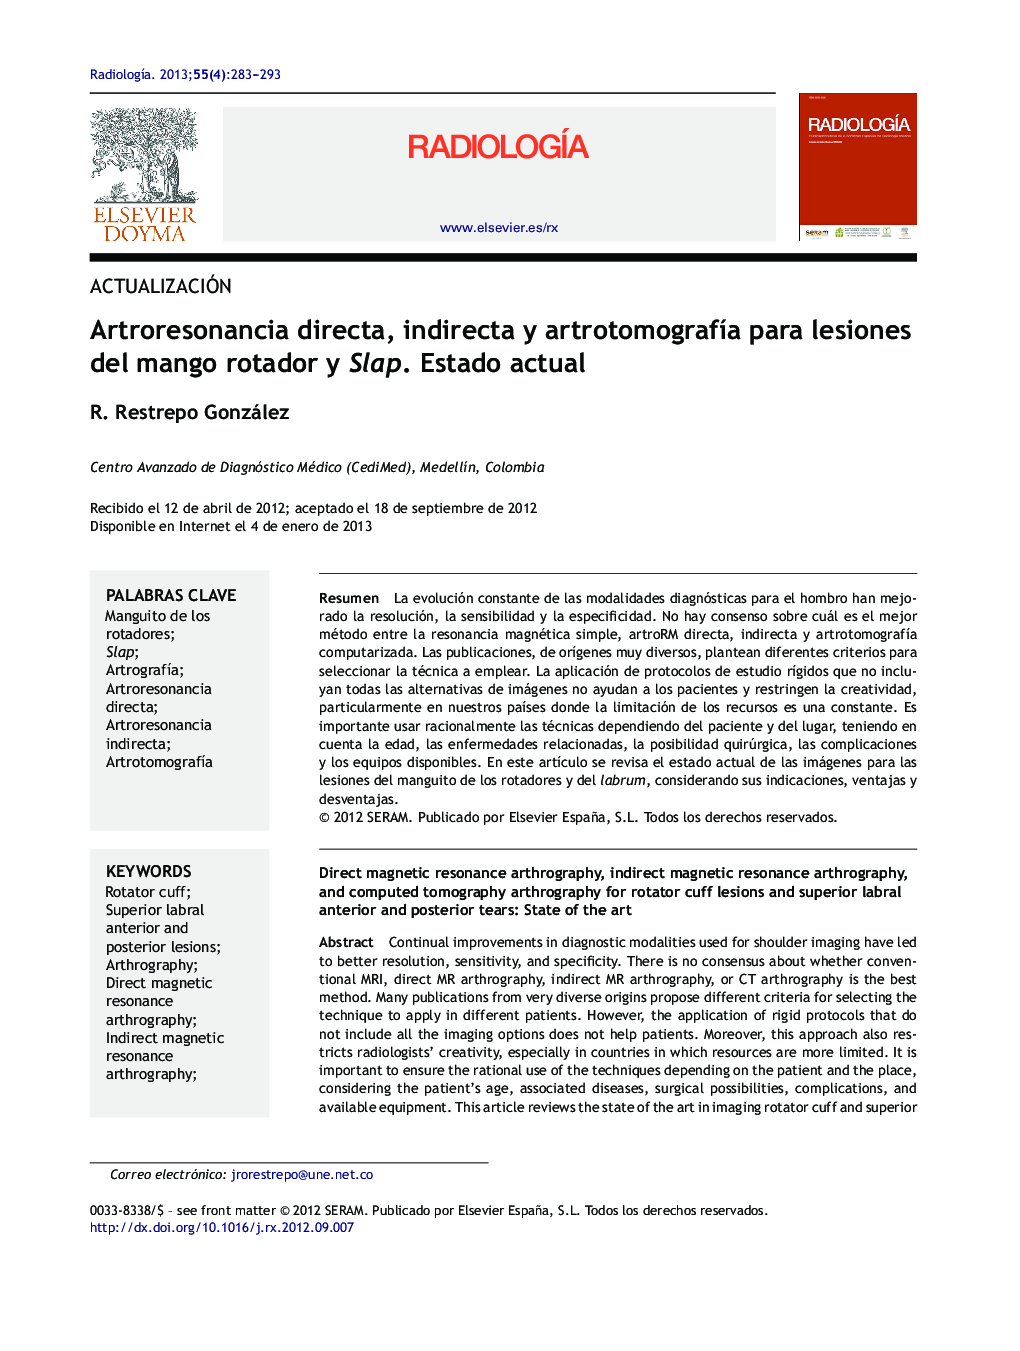 Artroresonancia directa, indirecta y artrotomografÃ­a para lesiones del mango rotador y Slap. Estado actual